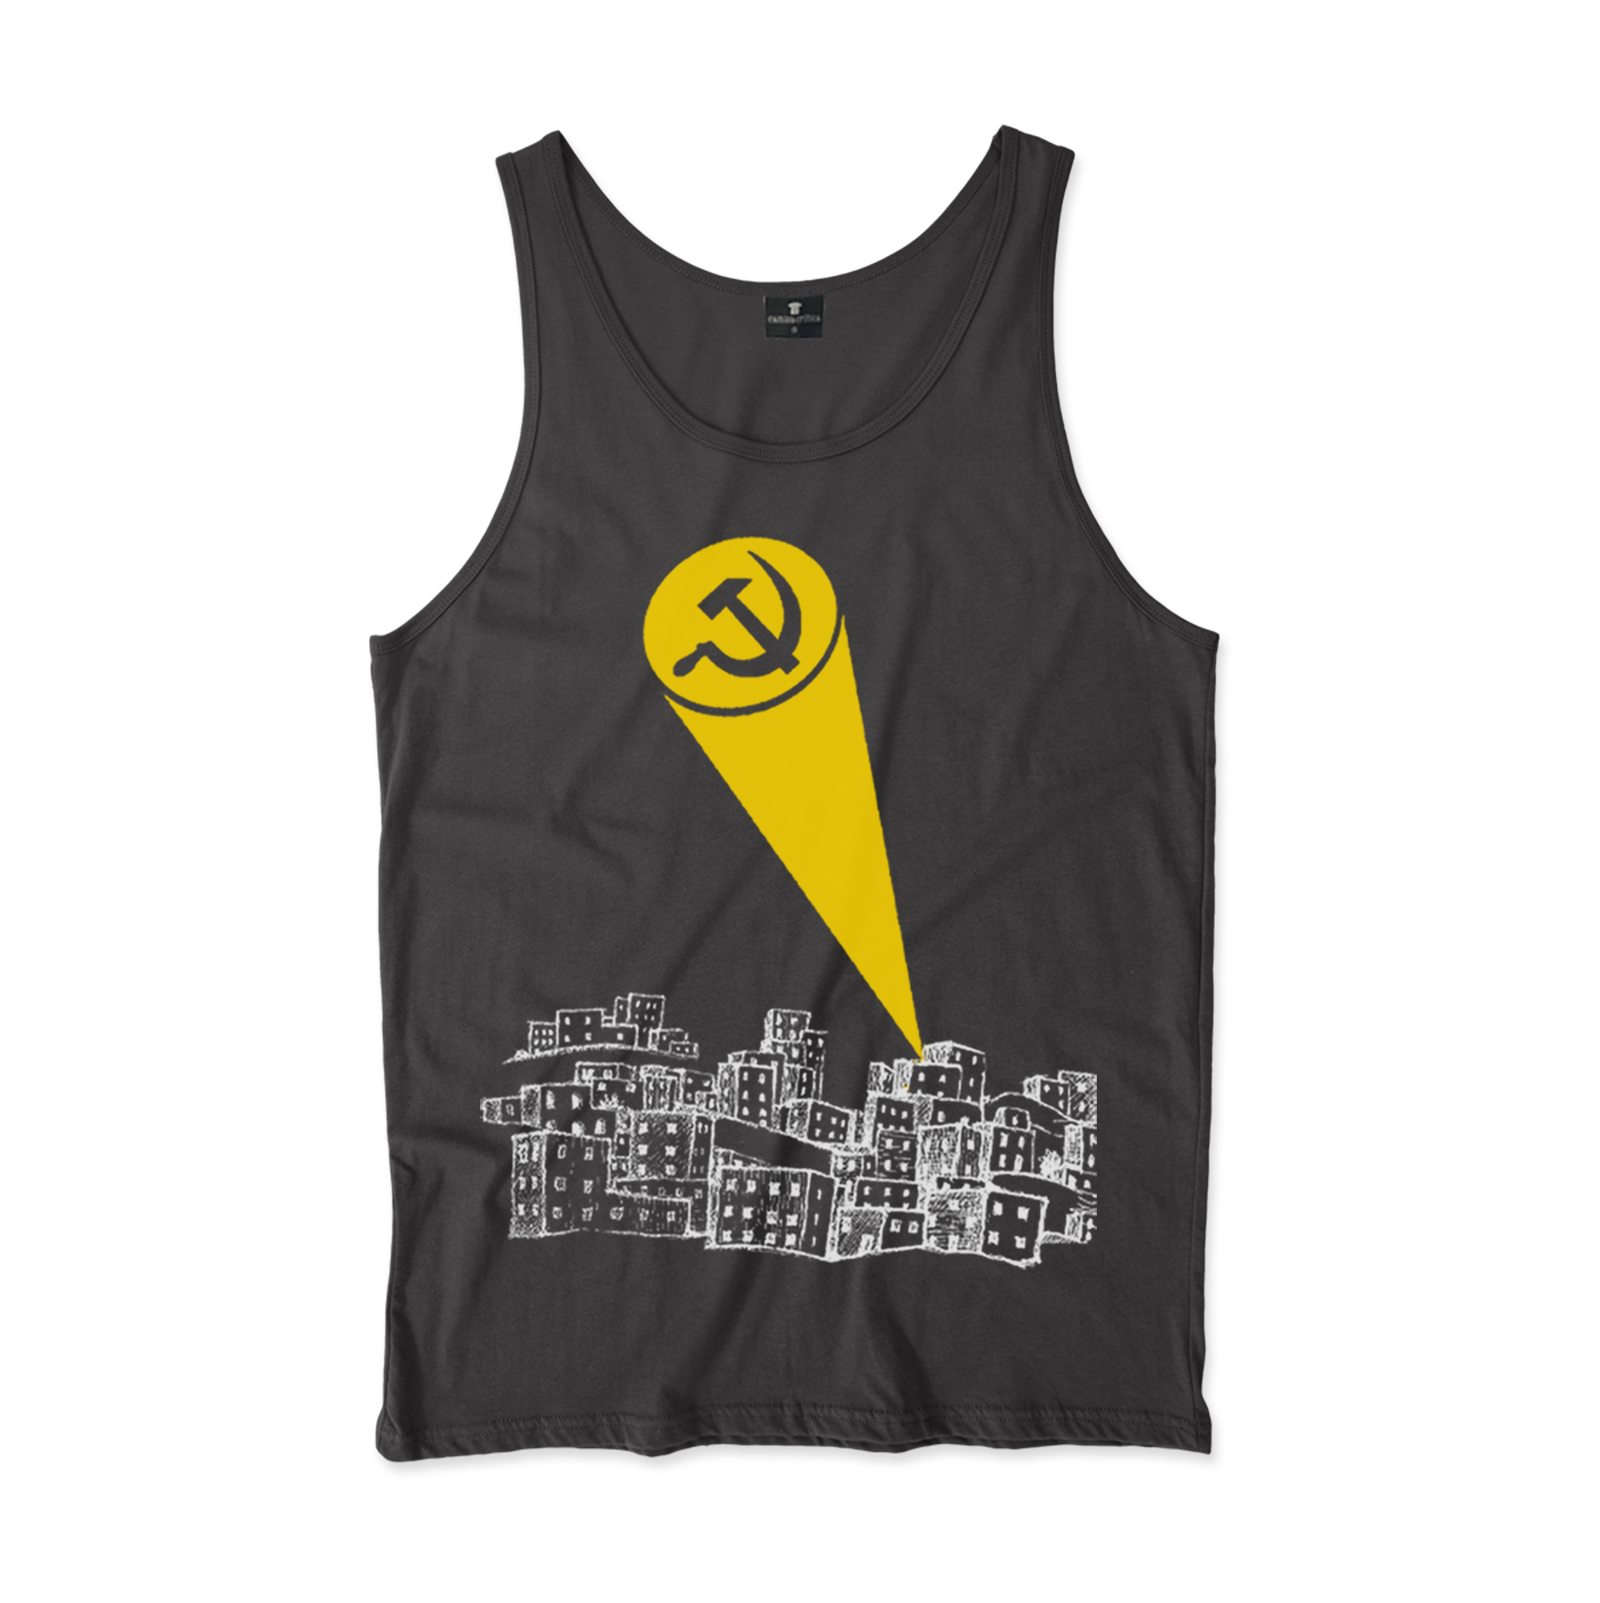 Camiseta Regata Estampa: Cidade aos pés da montanha com jato de luz no céu com formato de foice e martelo, ao estilo batman com o morcego.